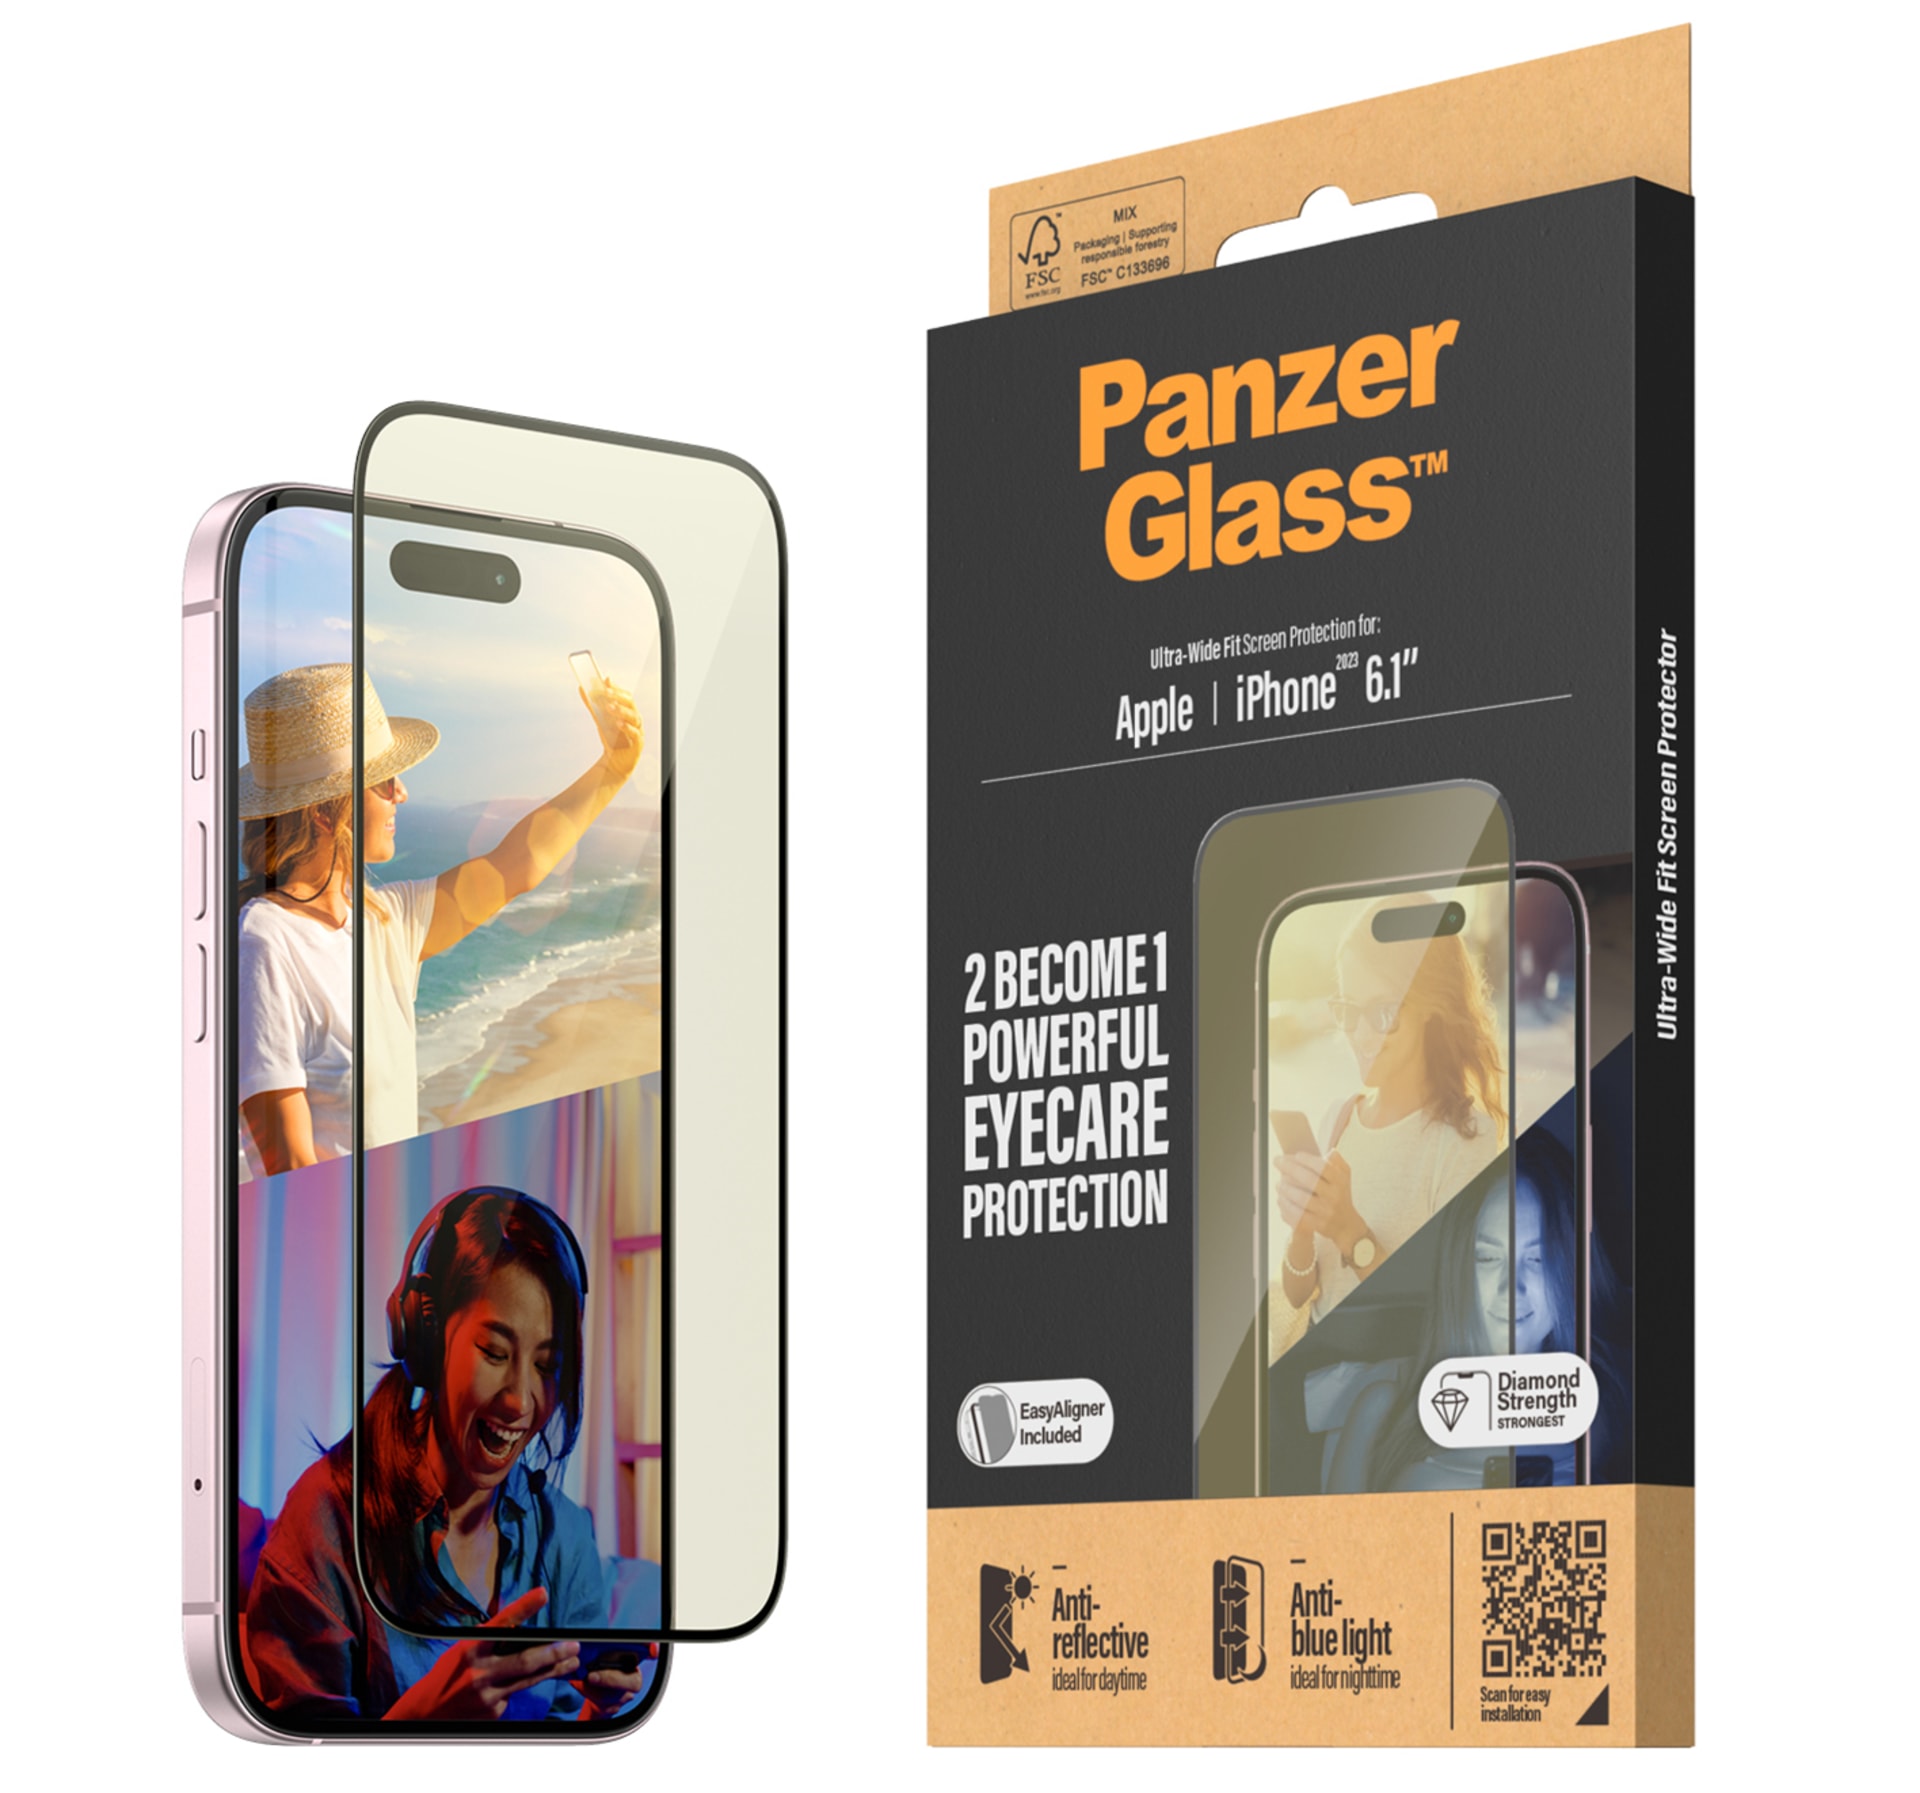 Nejprodávanější verze skel PanzerGlass, označovaná jako Ultra-Wide-Fit, je nabízena také ve verzi EyeCare, která kromě vašeho telefonu ochrání i vaše oči.